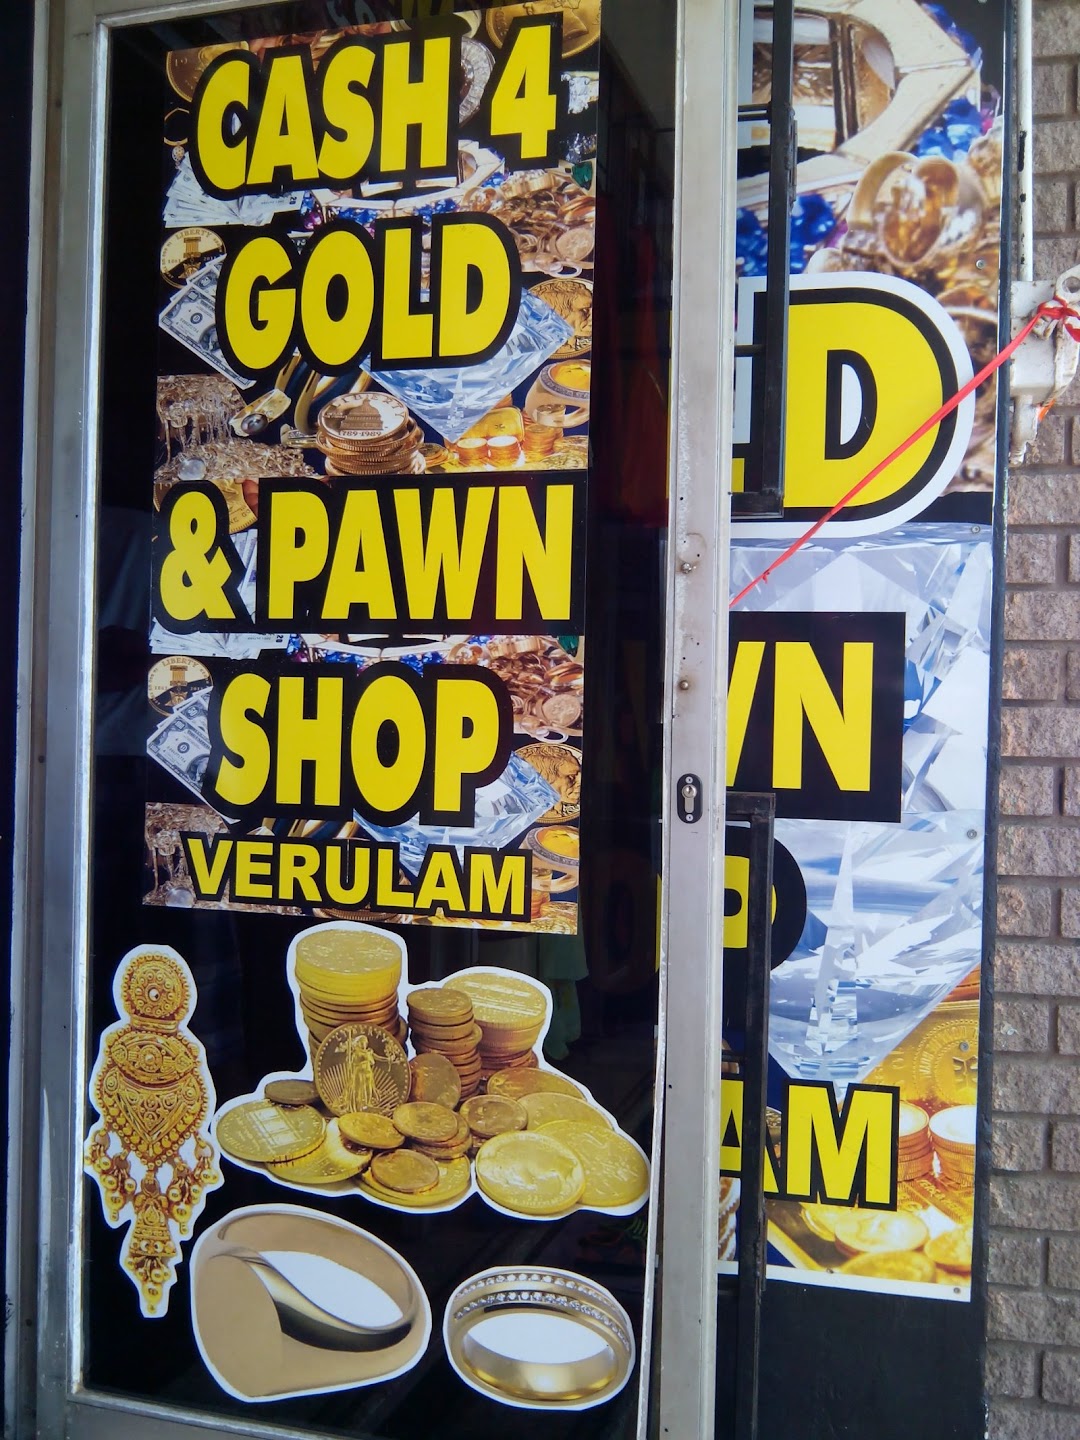 CASH 4 GOLD & PAWN SHOP